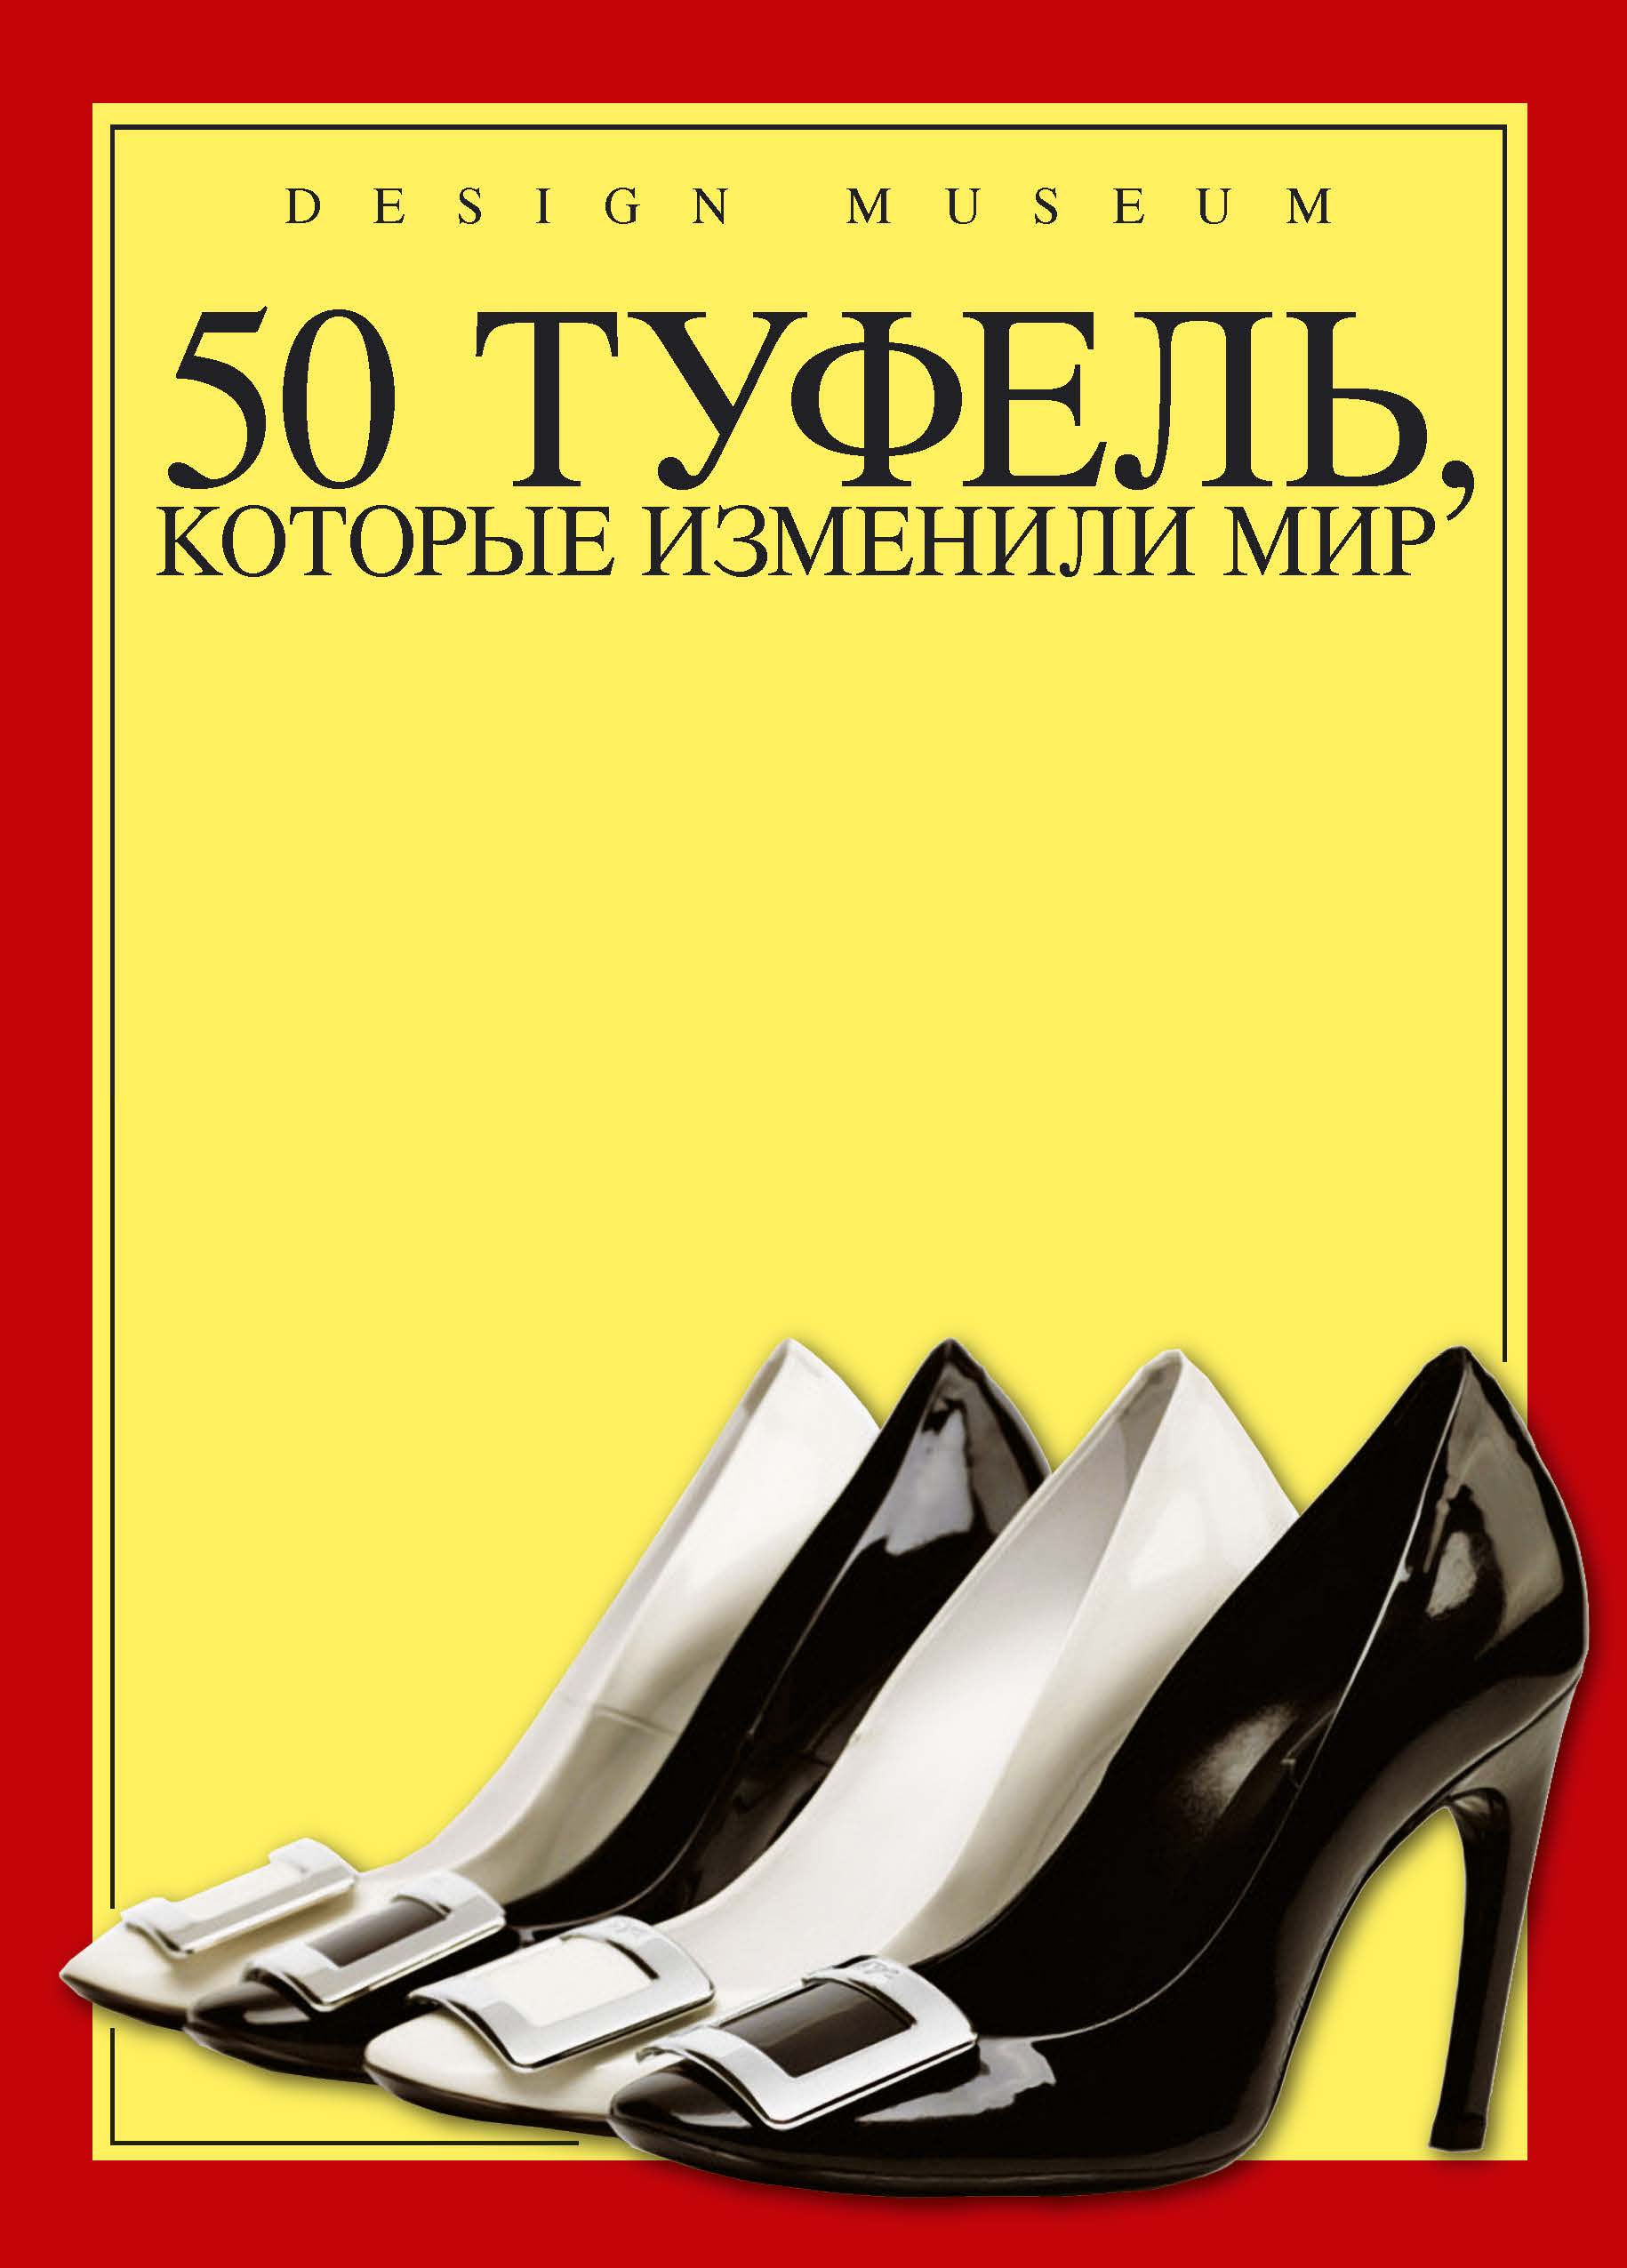 Книга "50 туфель, которые изменили мир" - купить книгу Fifty Shoes that Changed the World ISBN 978-5-389-06378-5 с доставкой по почте в интернет-магазине OZON.ru